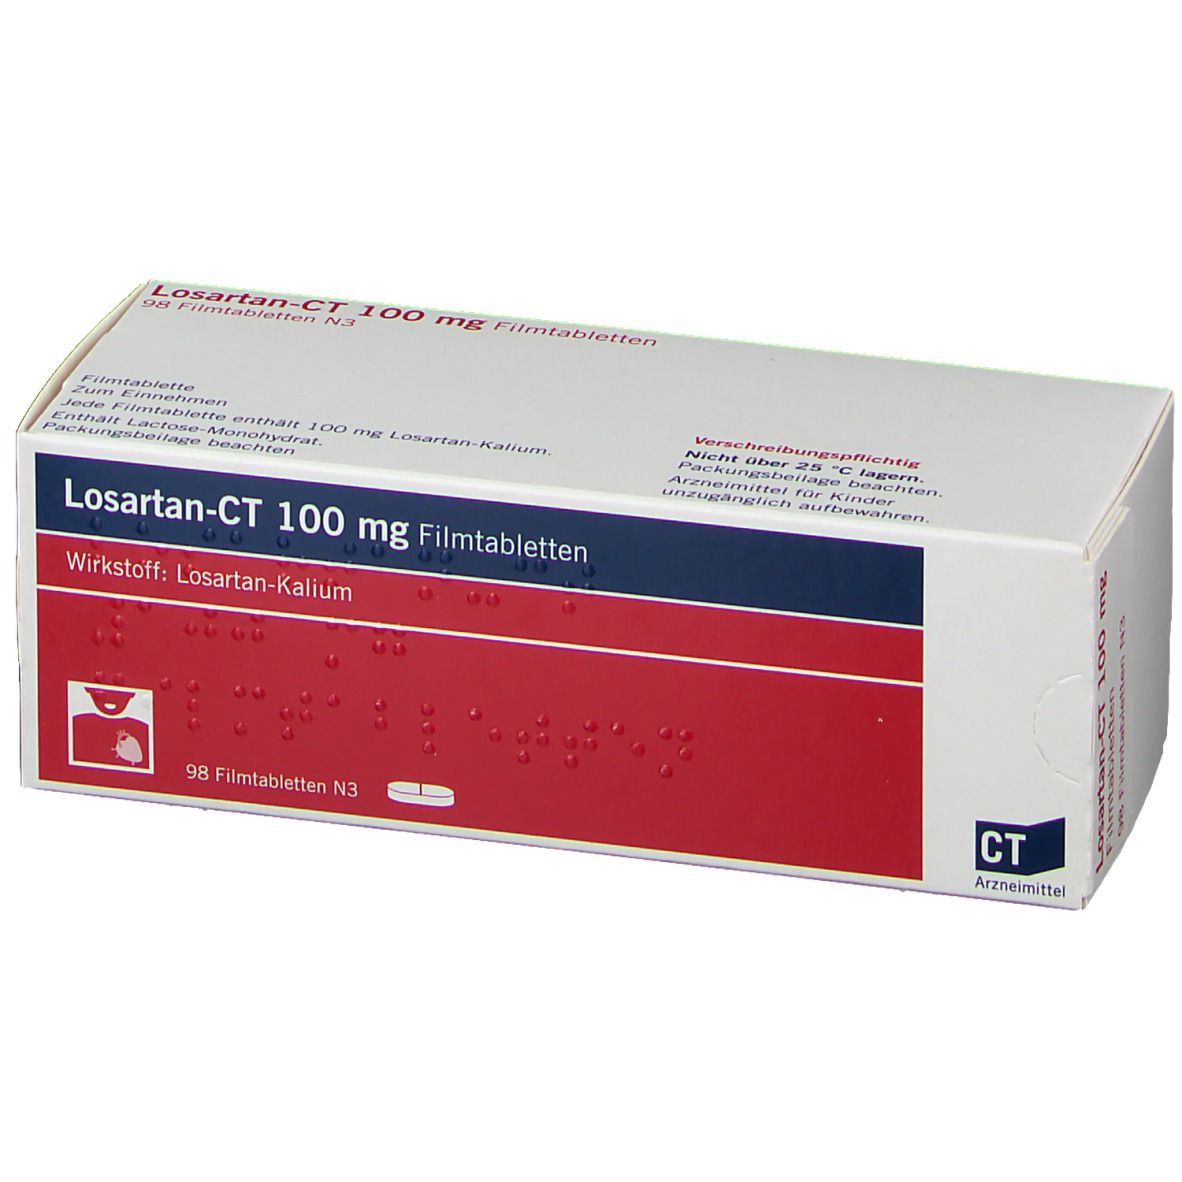 Losartan-CT 100 mg